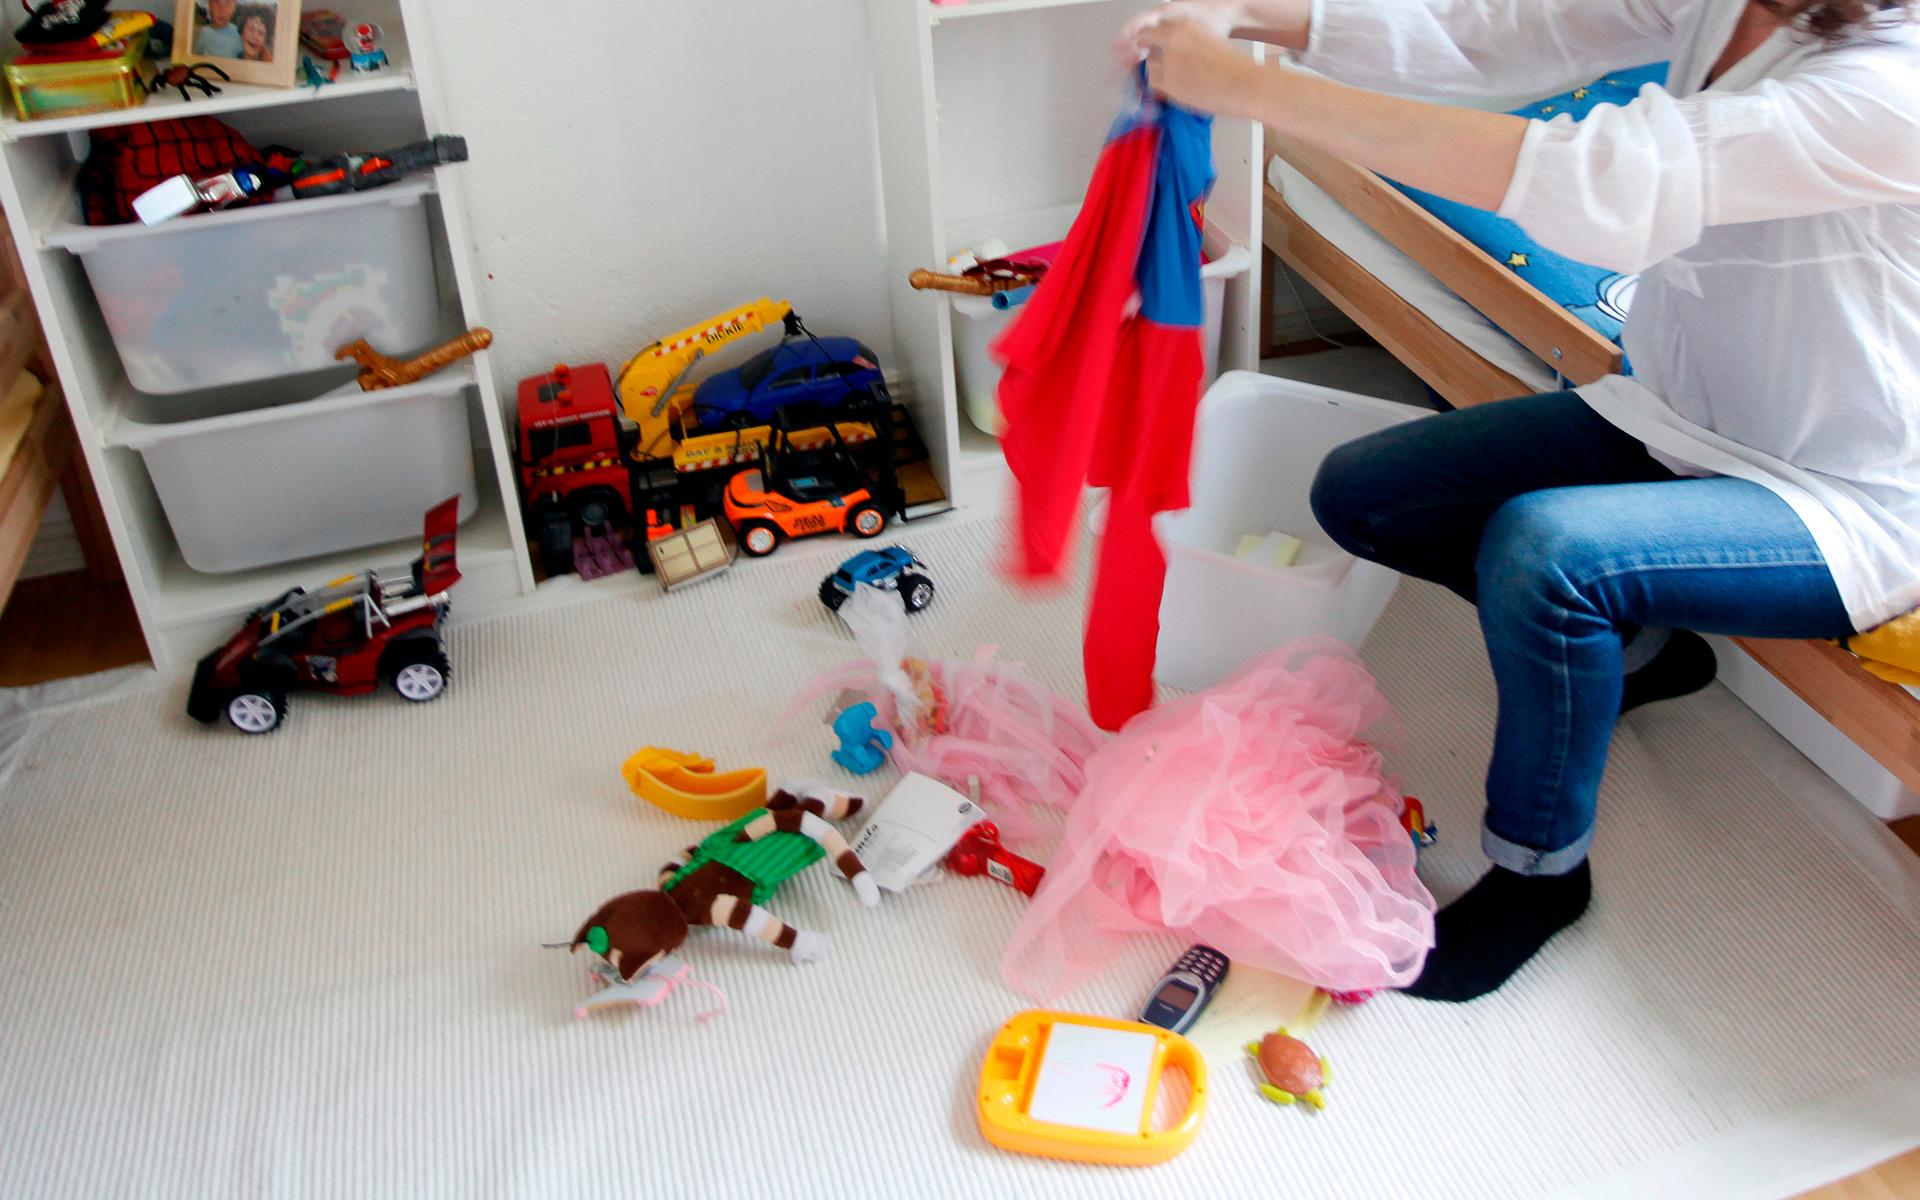 När barnen är hemma i karantän tycker Helena Lyth de kan få lov att rensa sina rum från småbarnssaker de inte använder längre. Saker unga kusiner eller välgörenhetsorganisationer kan få istället. Arkivbild.